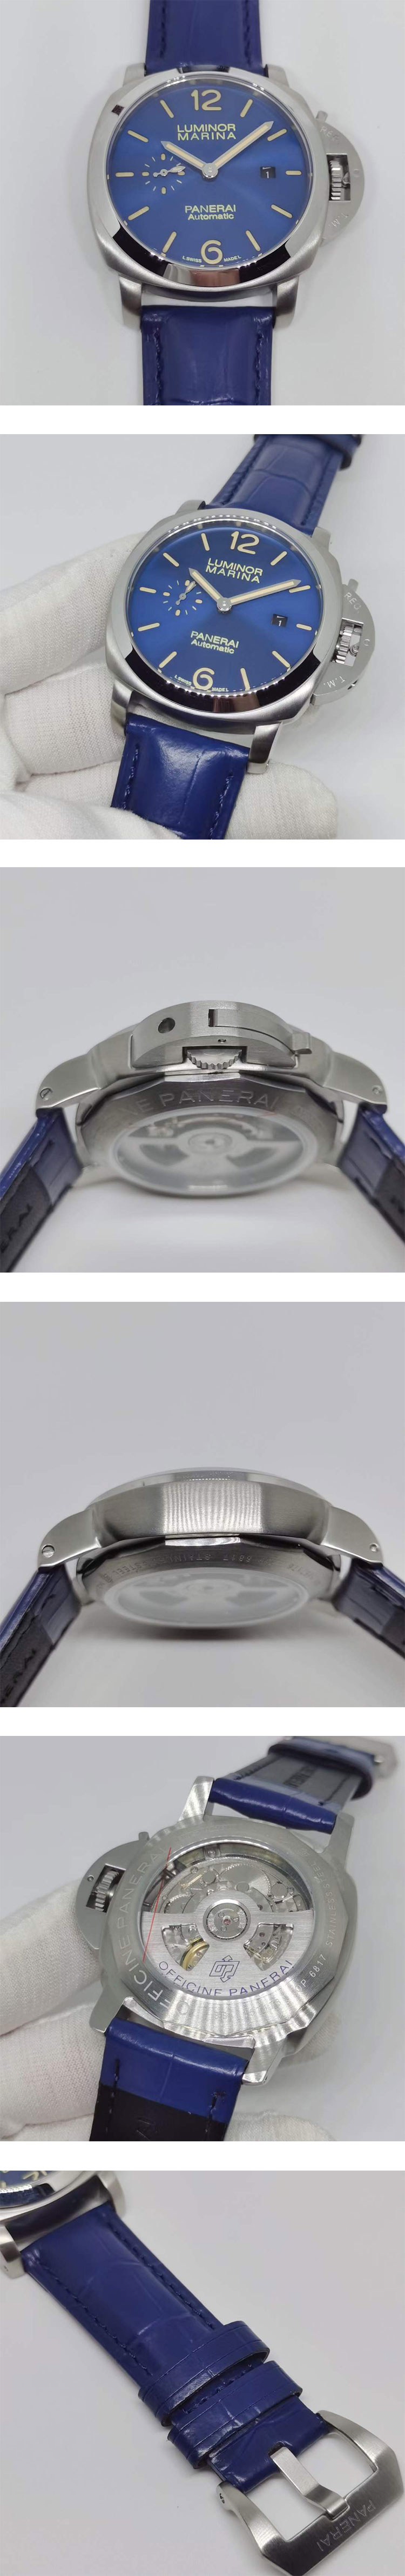 パネライスーパーコピー時計 ルミノールマリーナ 42mm PAM01393